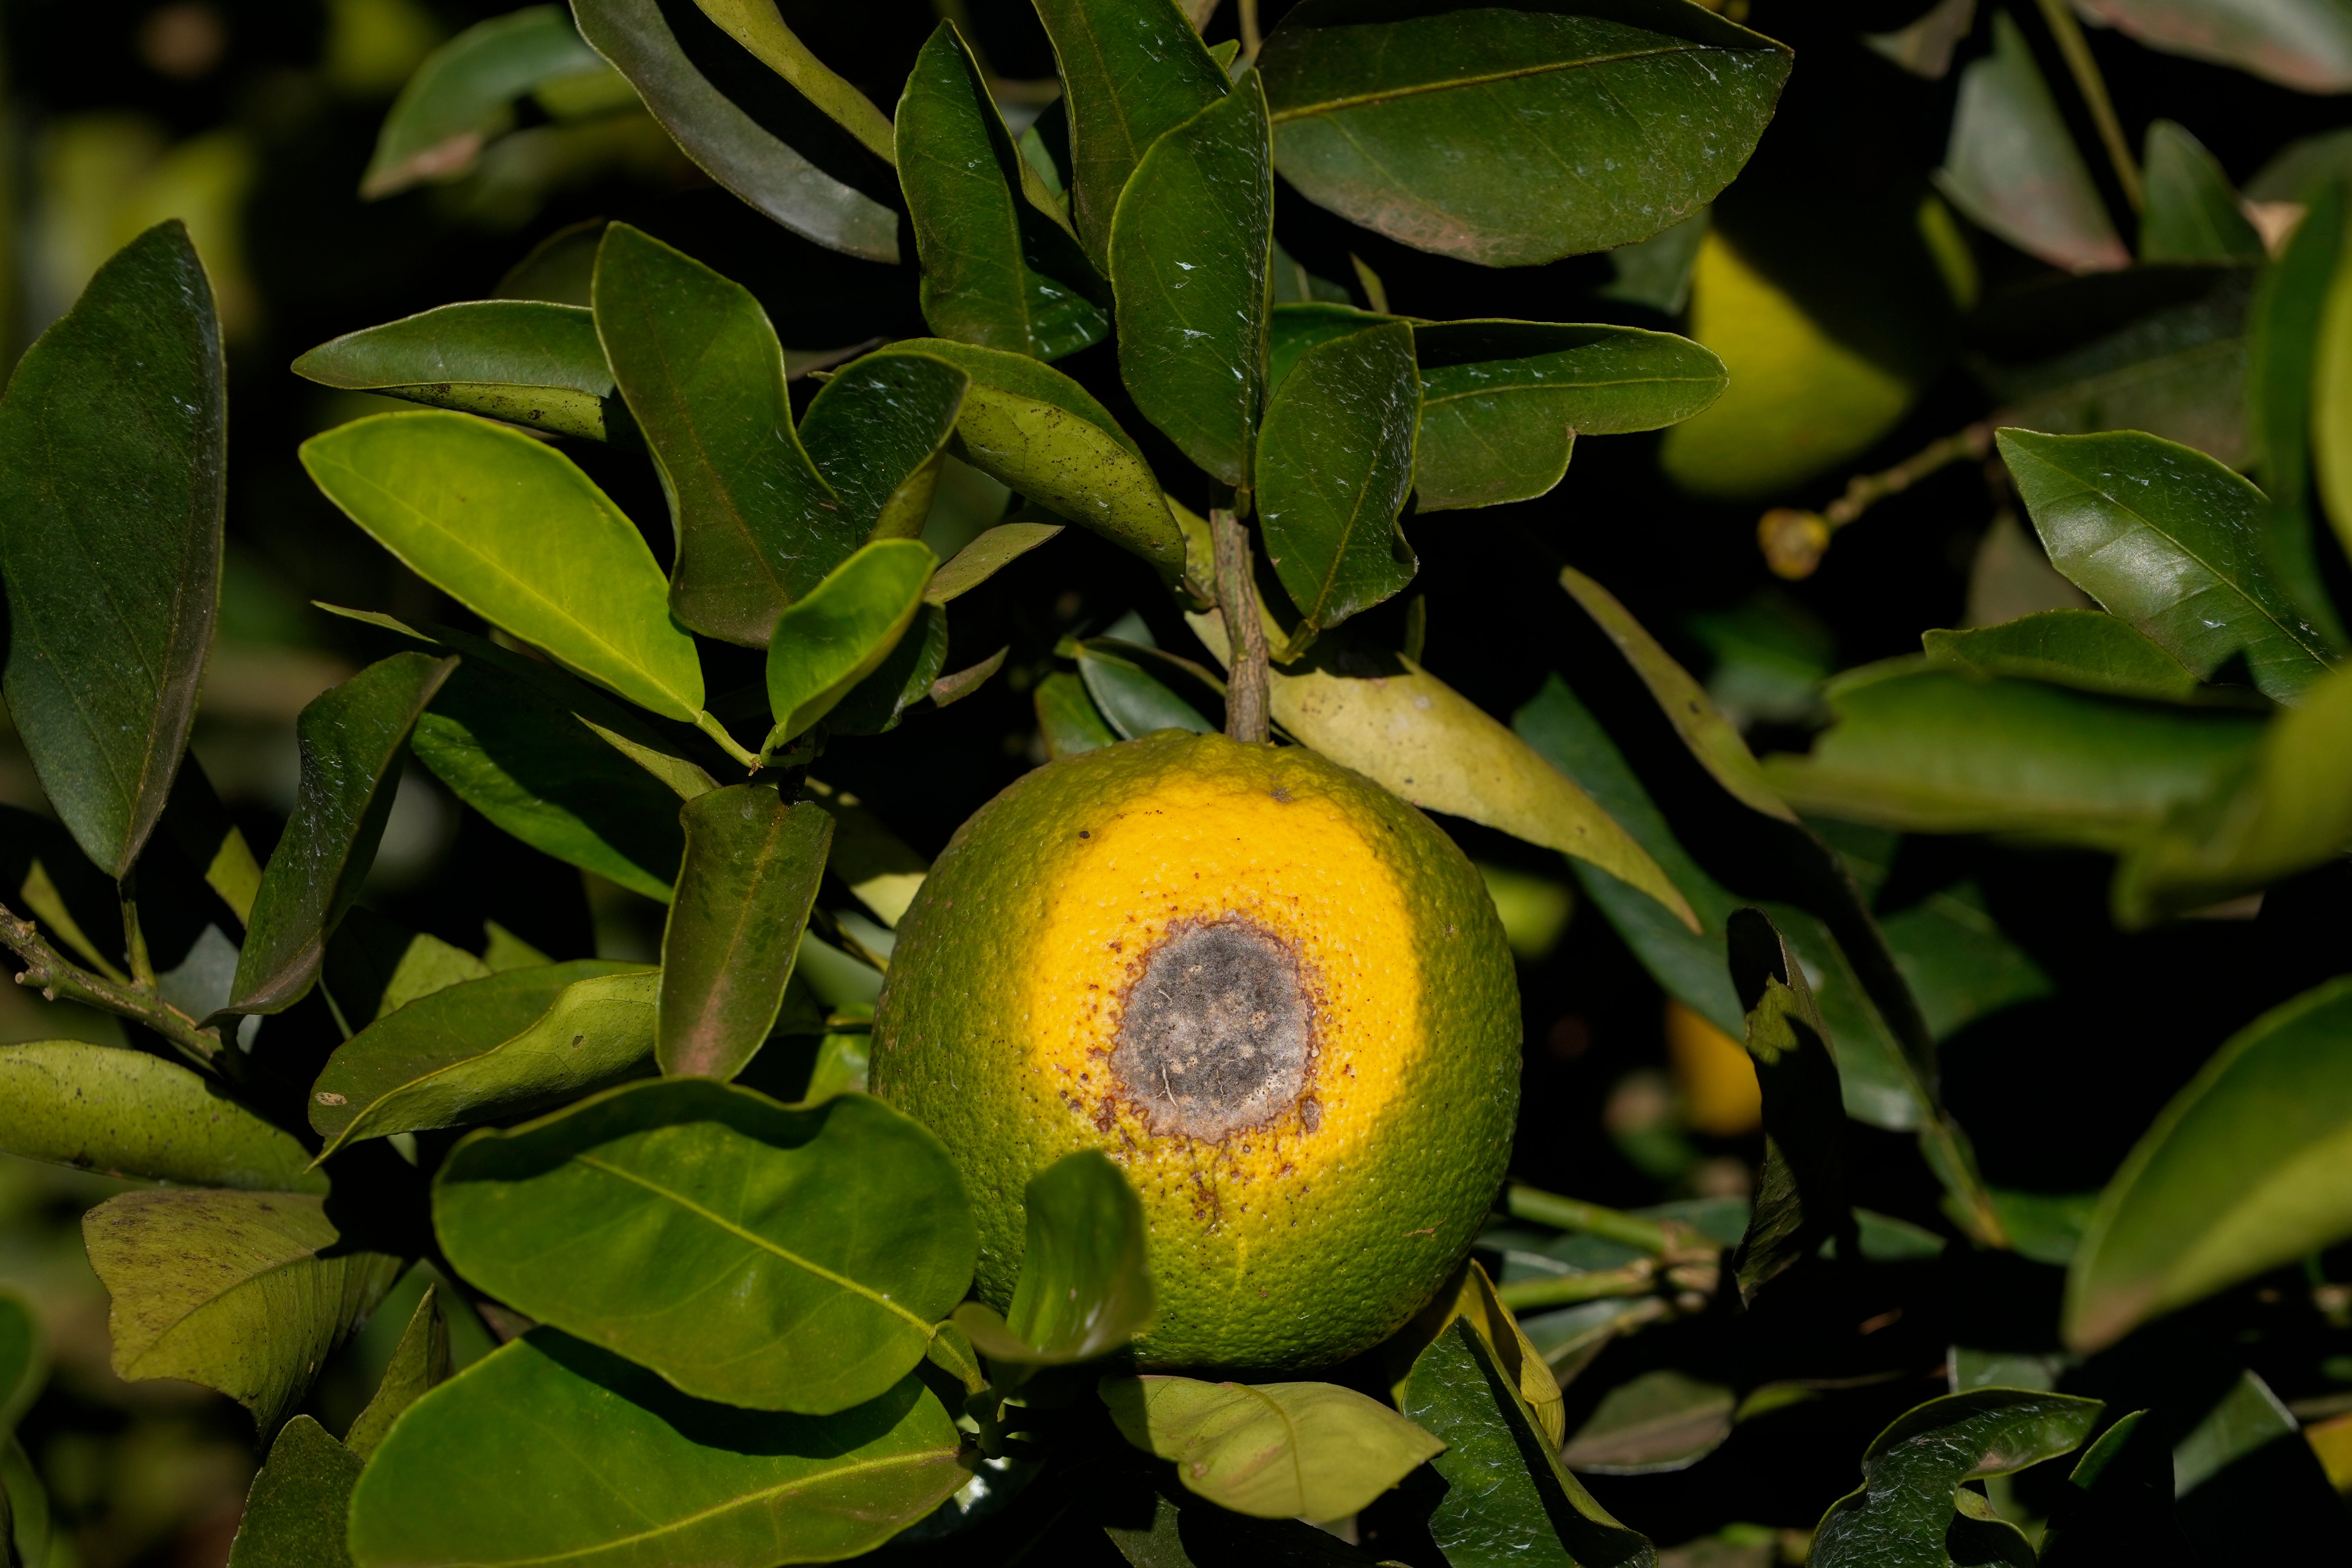 A spoiled orange hangs on a branch in a farm in Mogi Guacu, Brazil